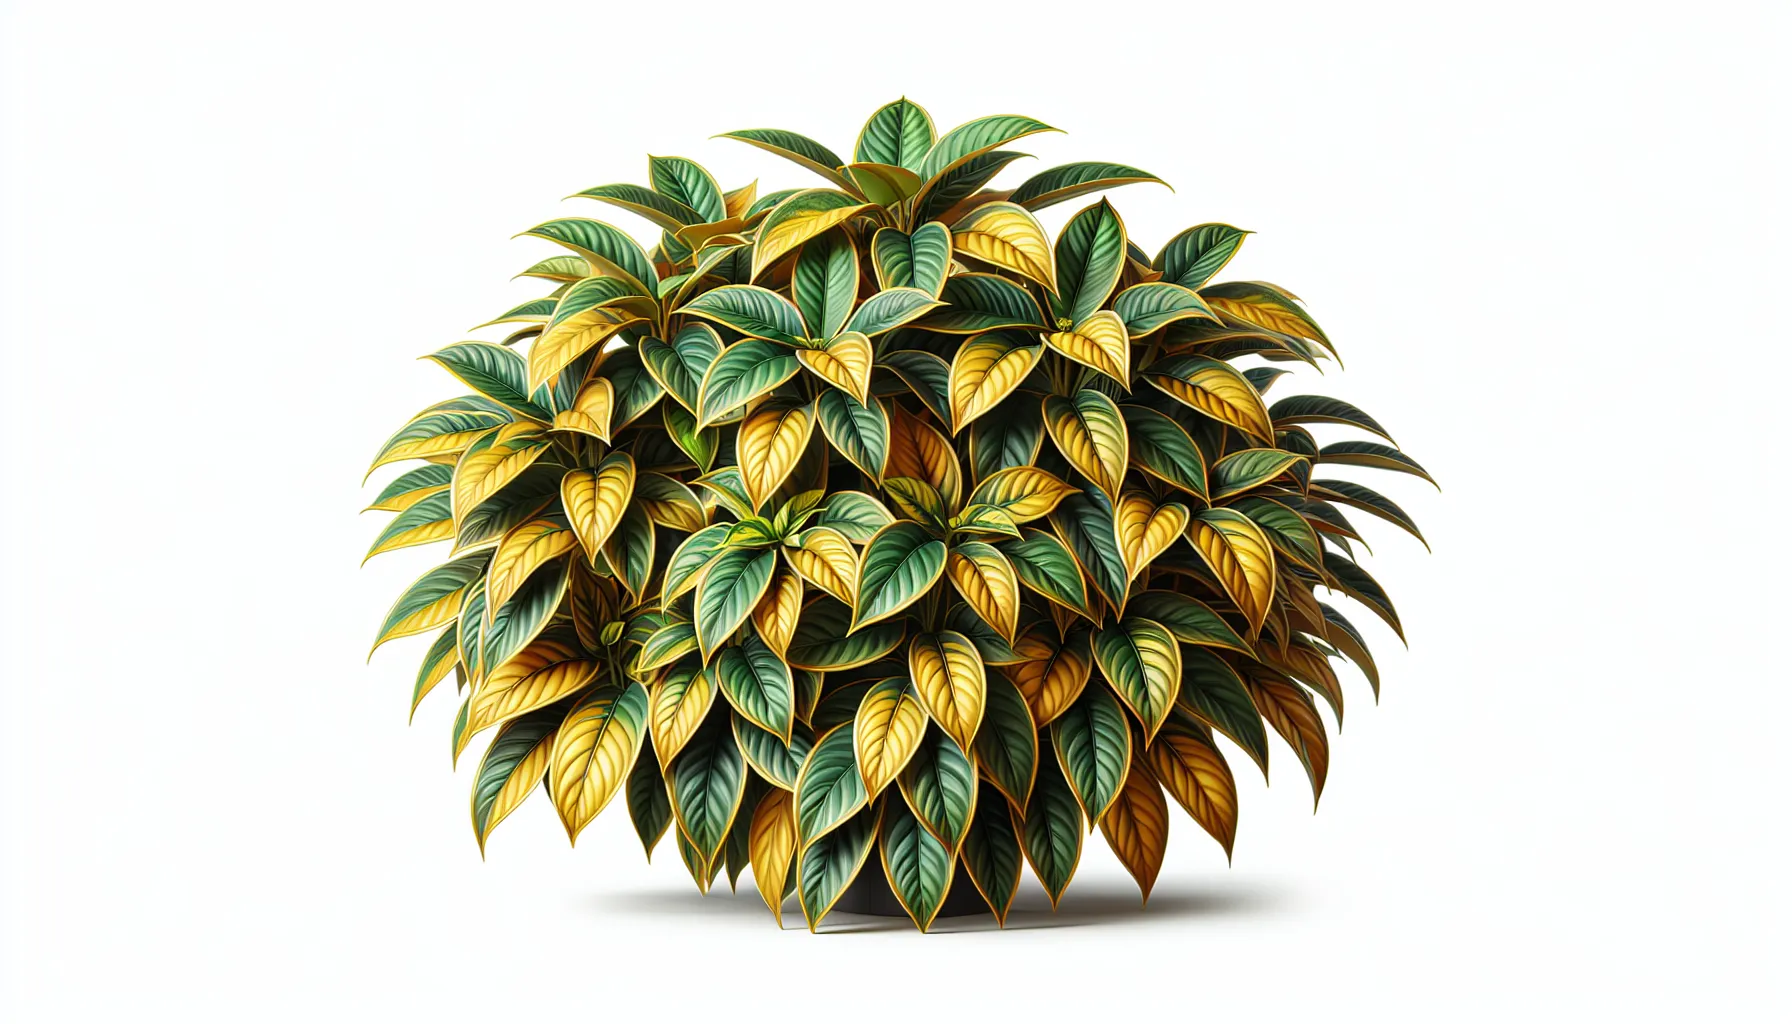 Imagen de una hermosa Schefflera Gold Capella, una planta de interior y exterior, mostrando sus brillantes y variadas hojas en tonos de oro y verde.